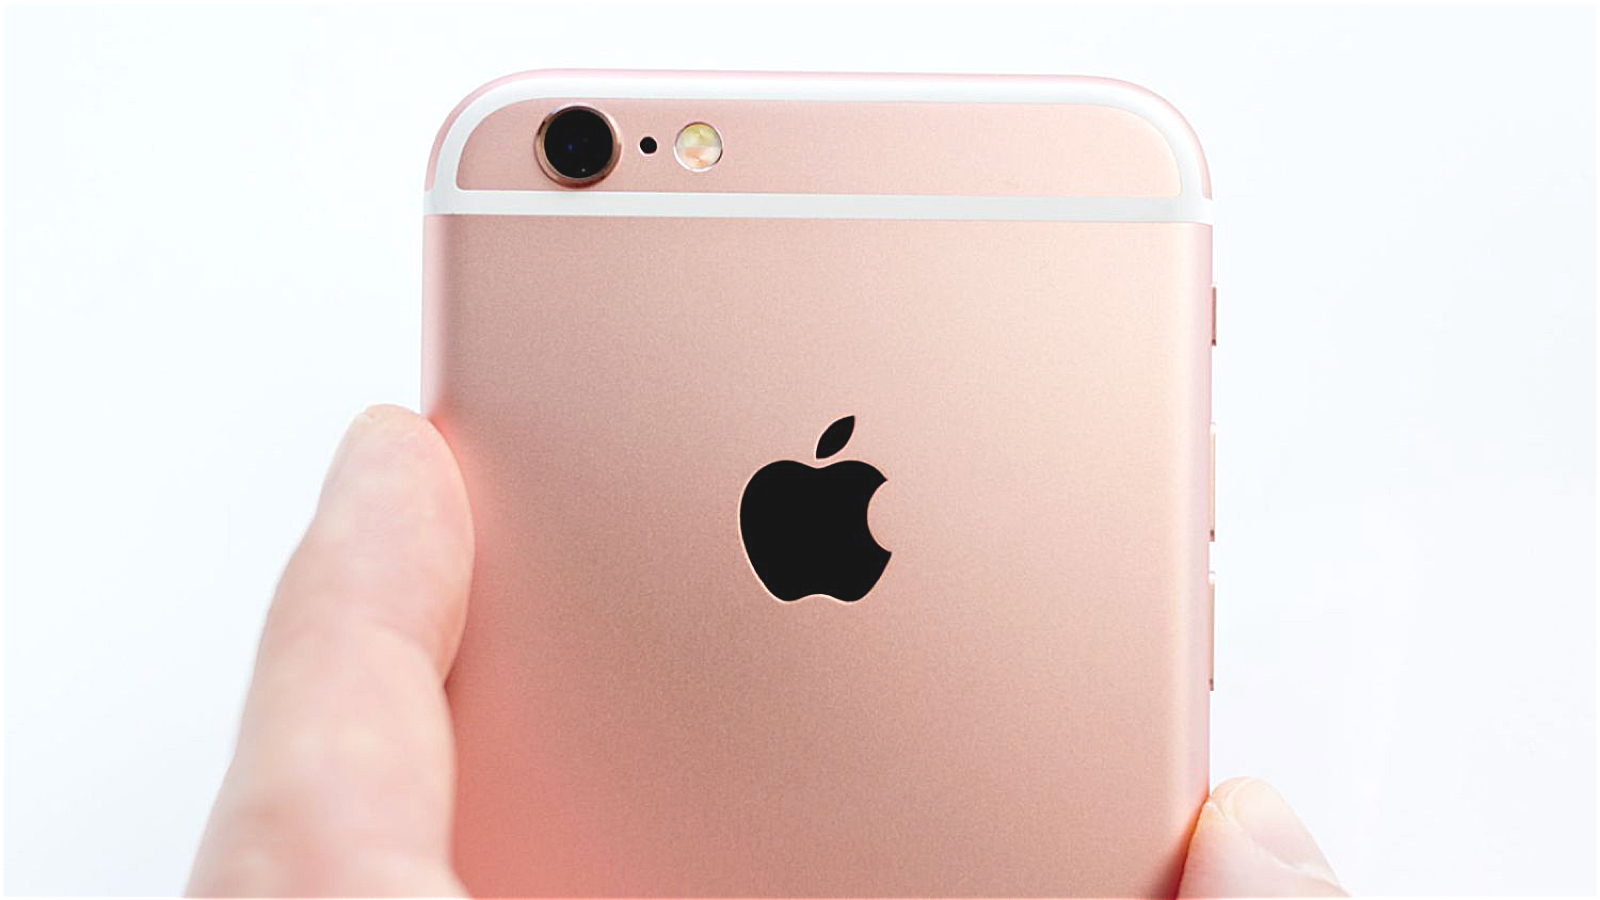 iPhone se будет доступен в таких же цветах, как и iPhone 6s